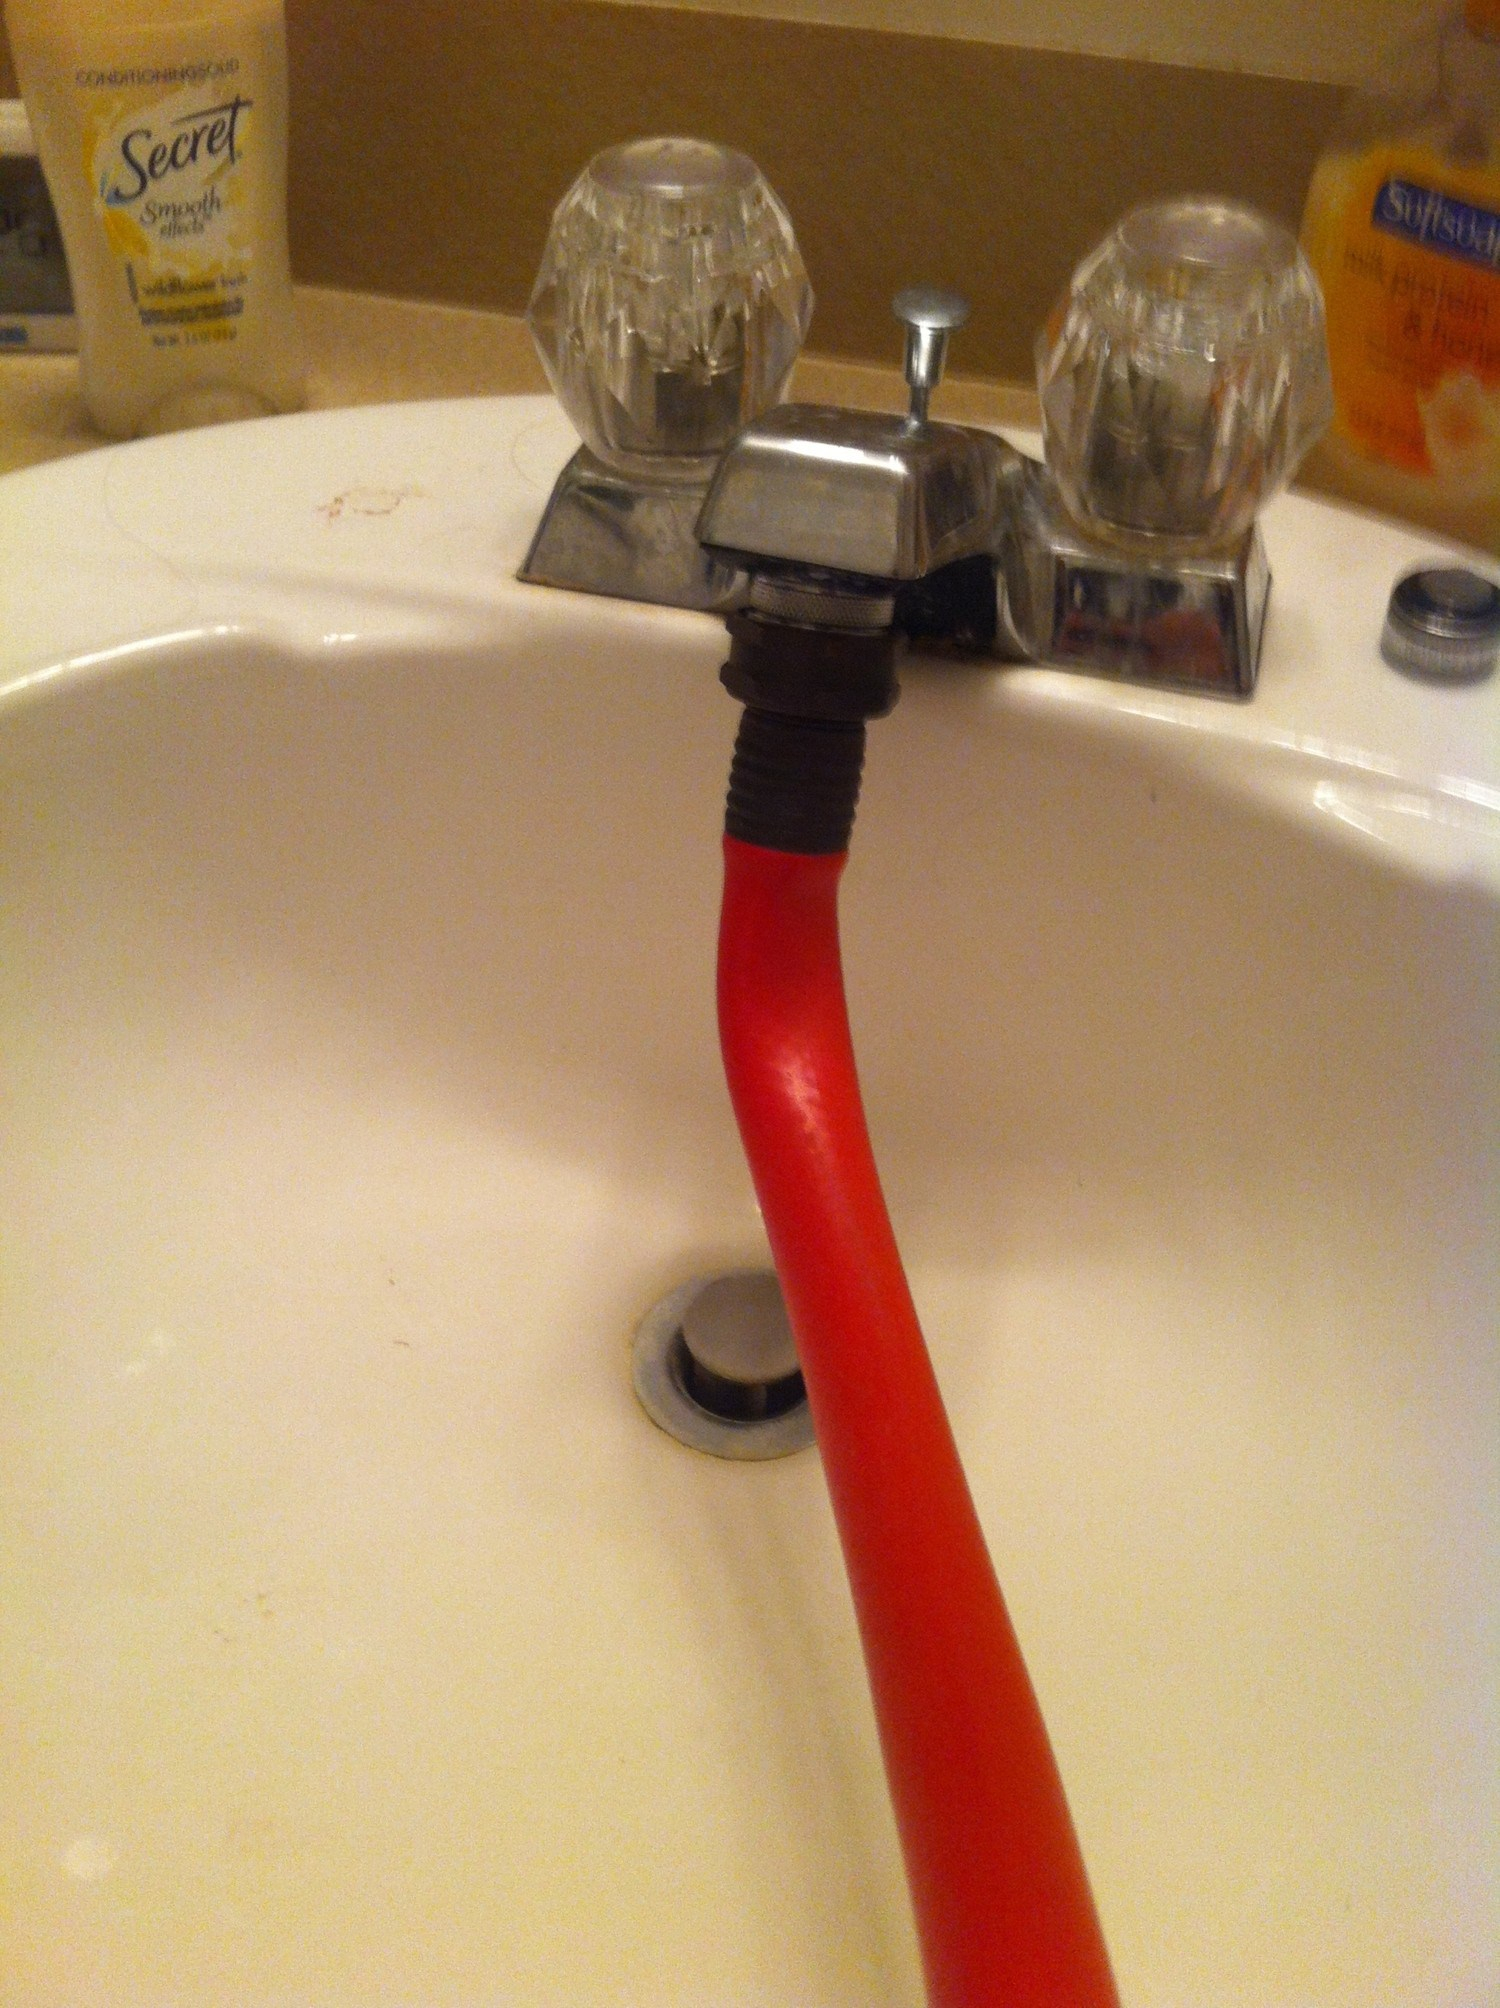 Rubber Hose Attachment For Bathtub Faucet Faucet Ideas Site